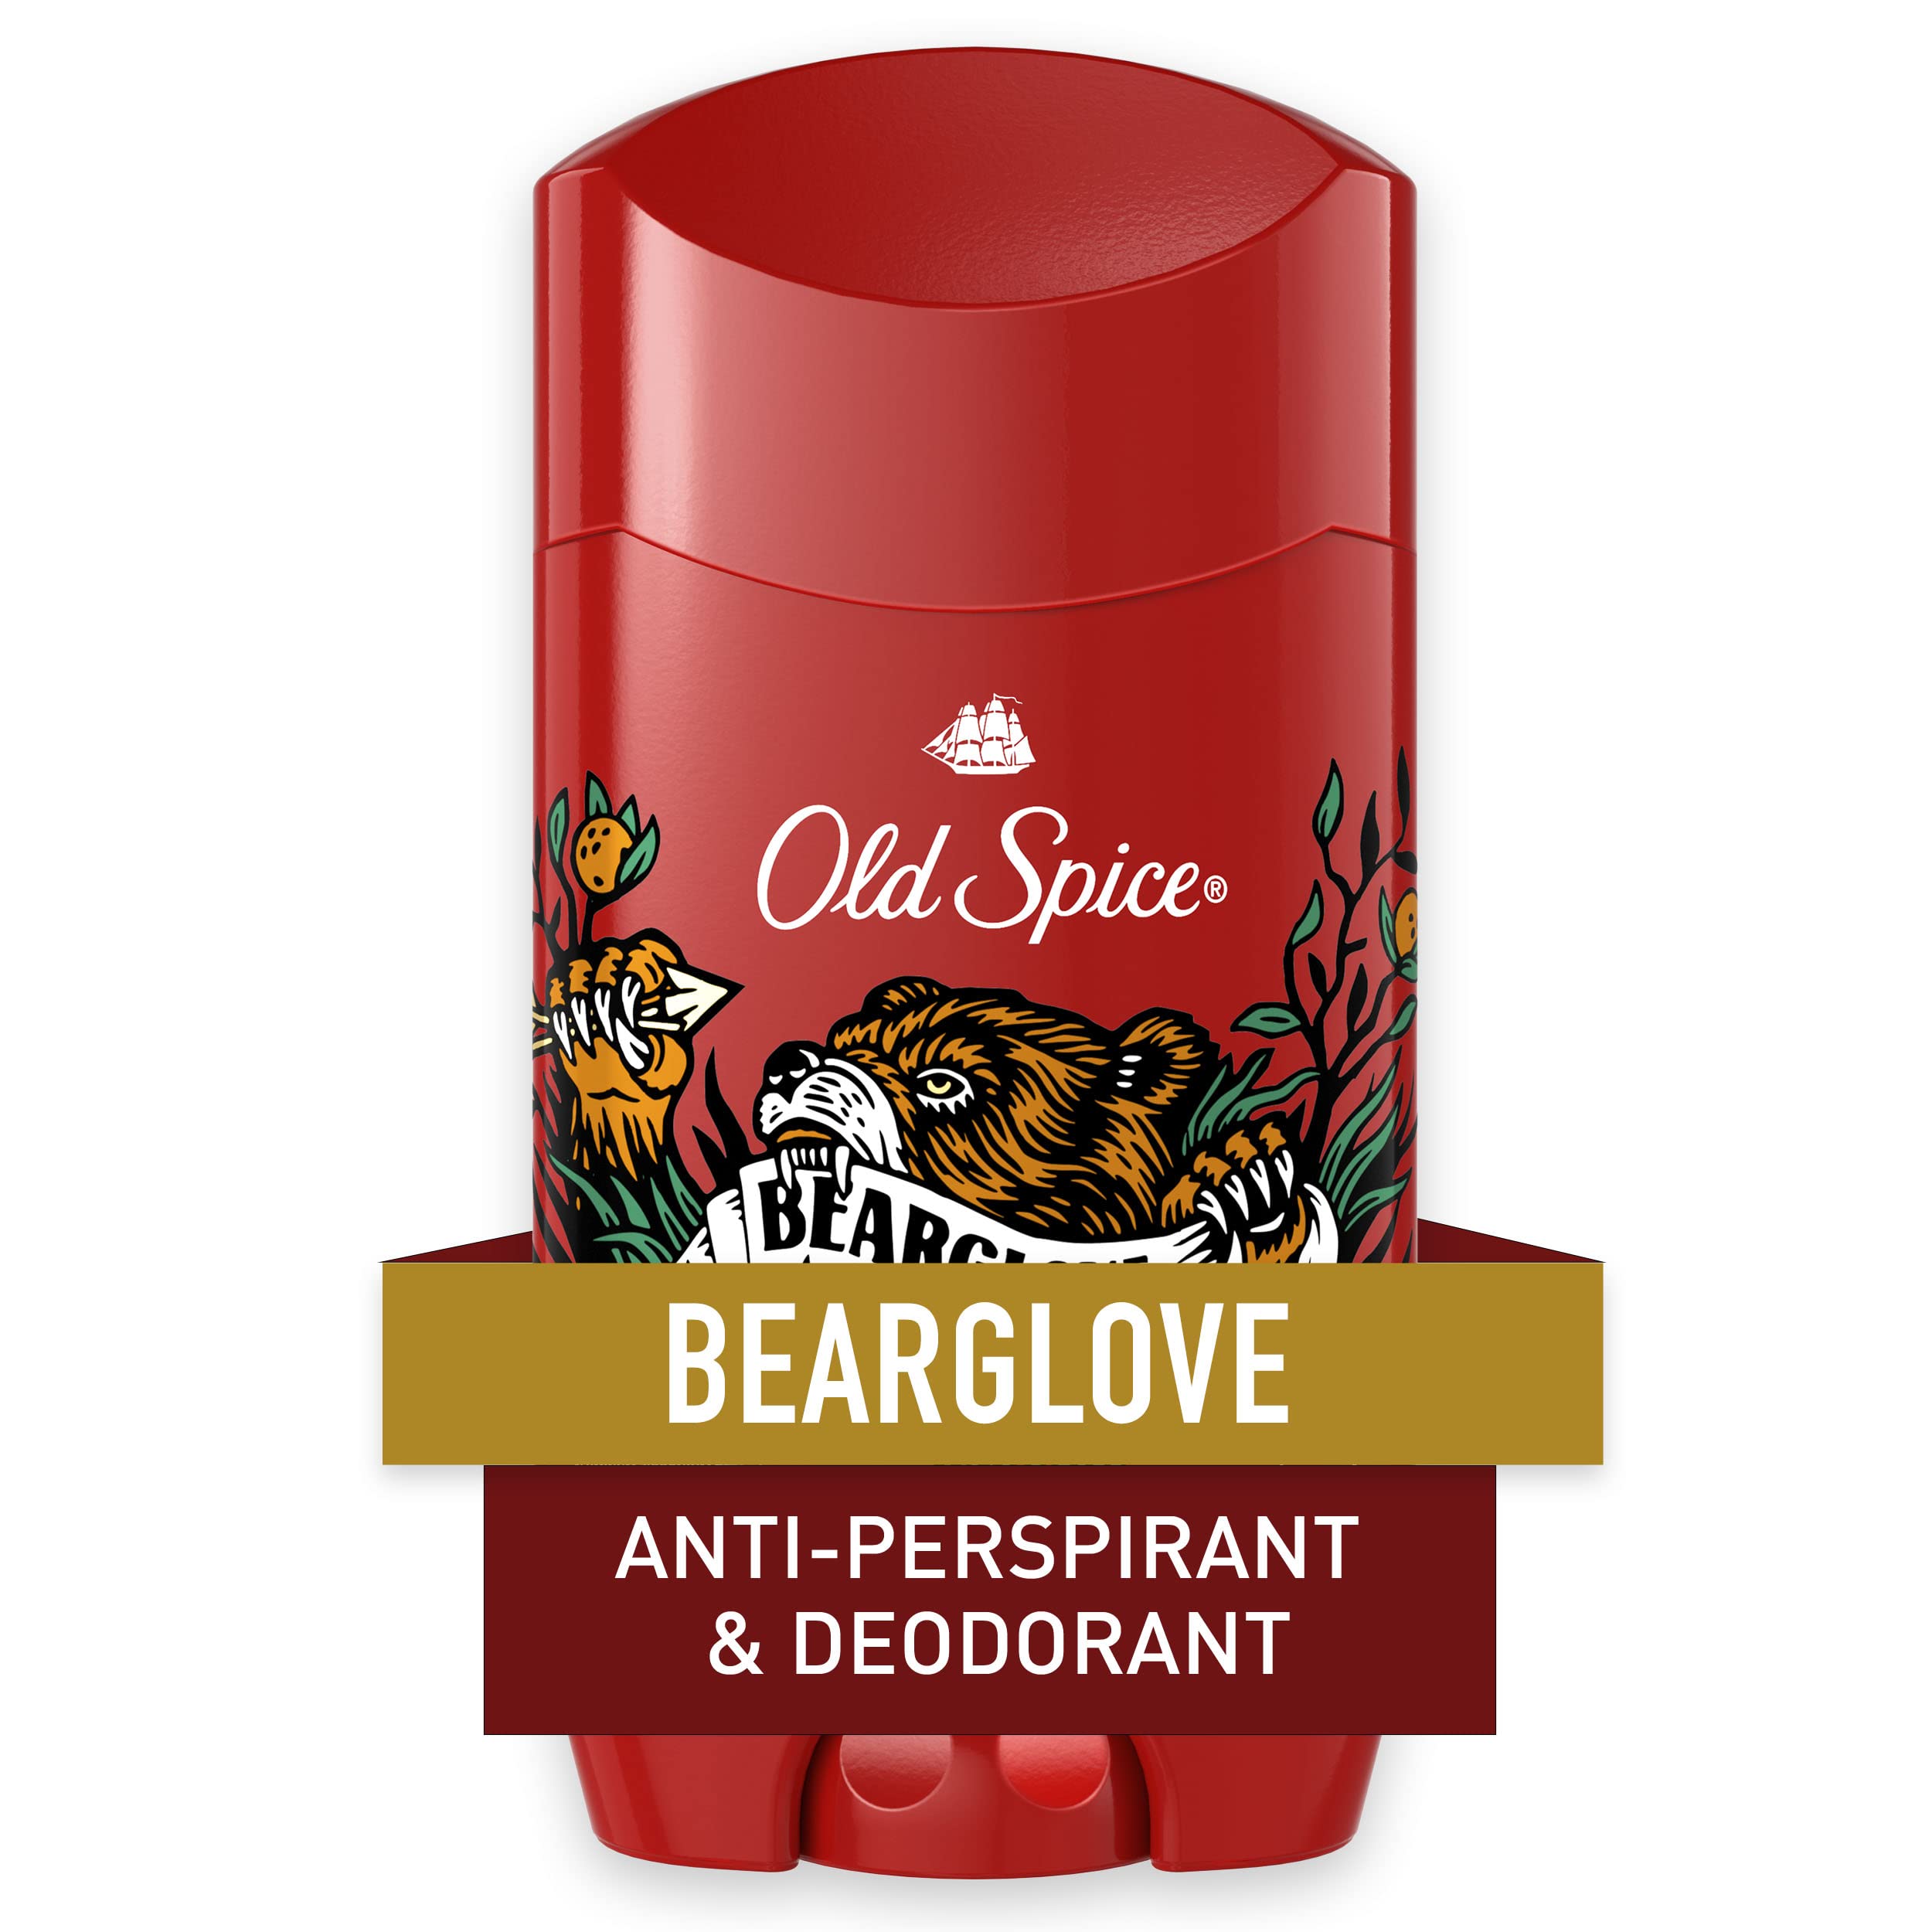 Old Spice Wild Bearglove, 2.6 oz